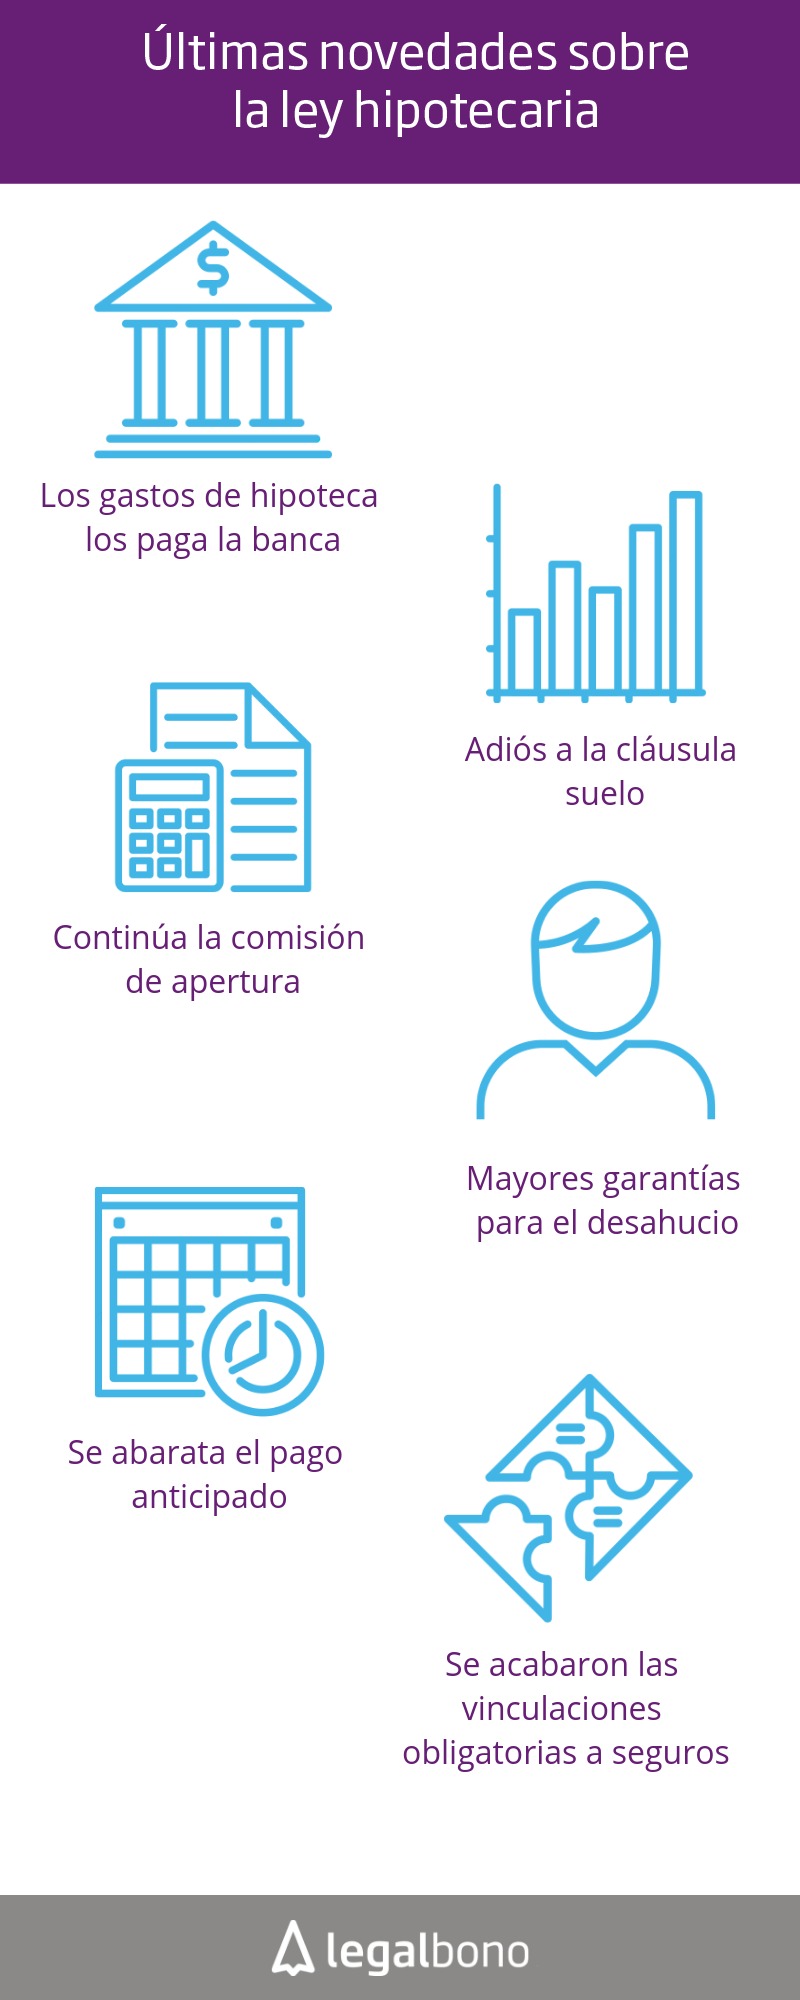 ¿Qué sabes de la ley hipotecaria en España? 1